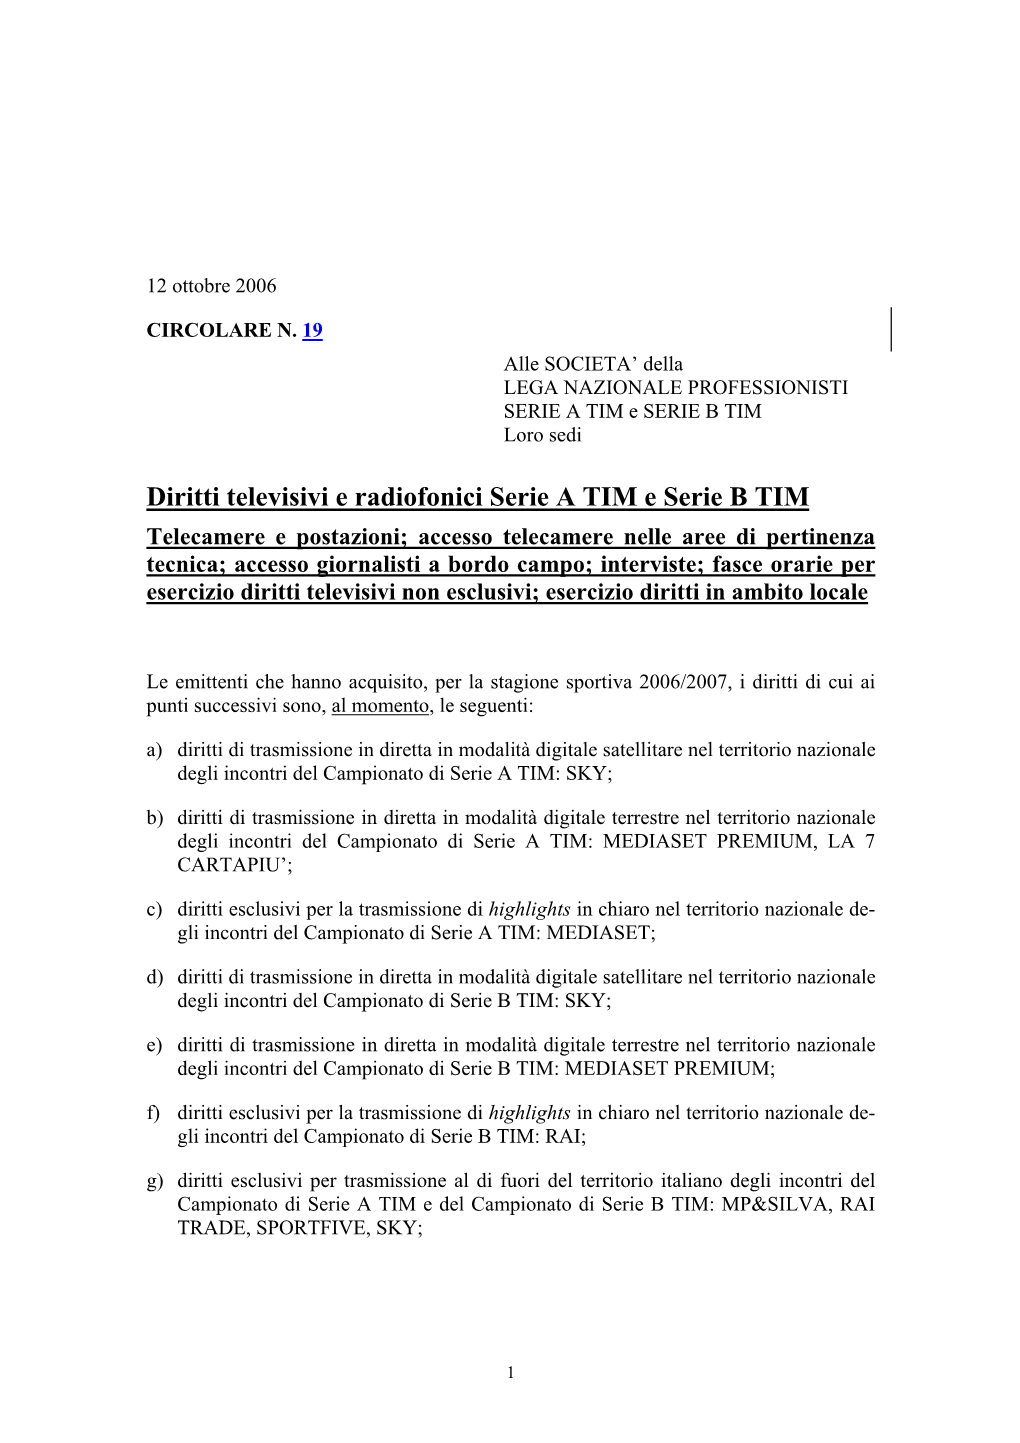 Diritti Televisivi E Radiofonici Serie a TIM E Serie B